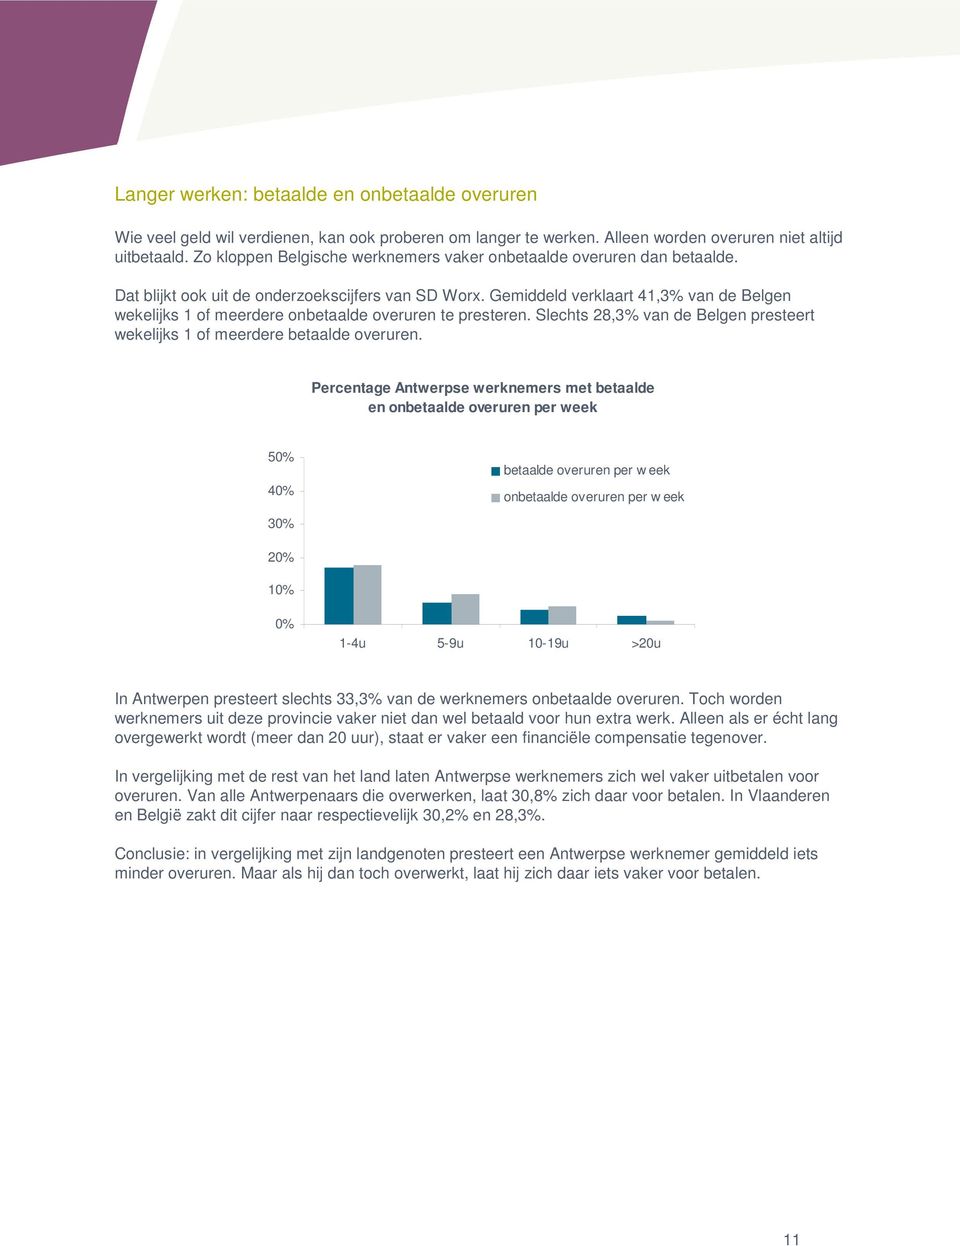 Gemiddeld verklaart 41,3% van de Belgen wekelijks 1 of meerdere onbetaalde overuren te presteren. Slechts 28,3% van de Belgen presteert wekelijks 1 of meerdere betaalde overuren.